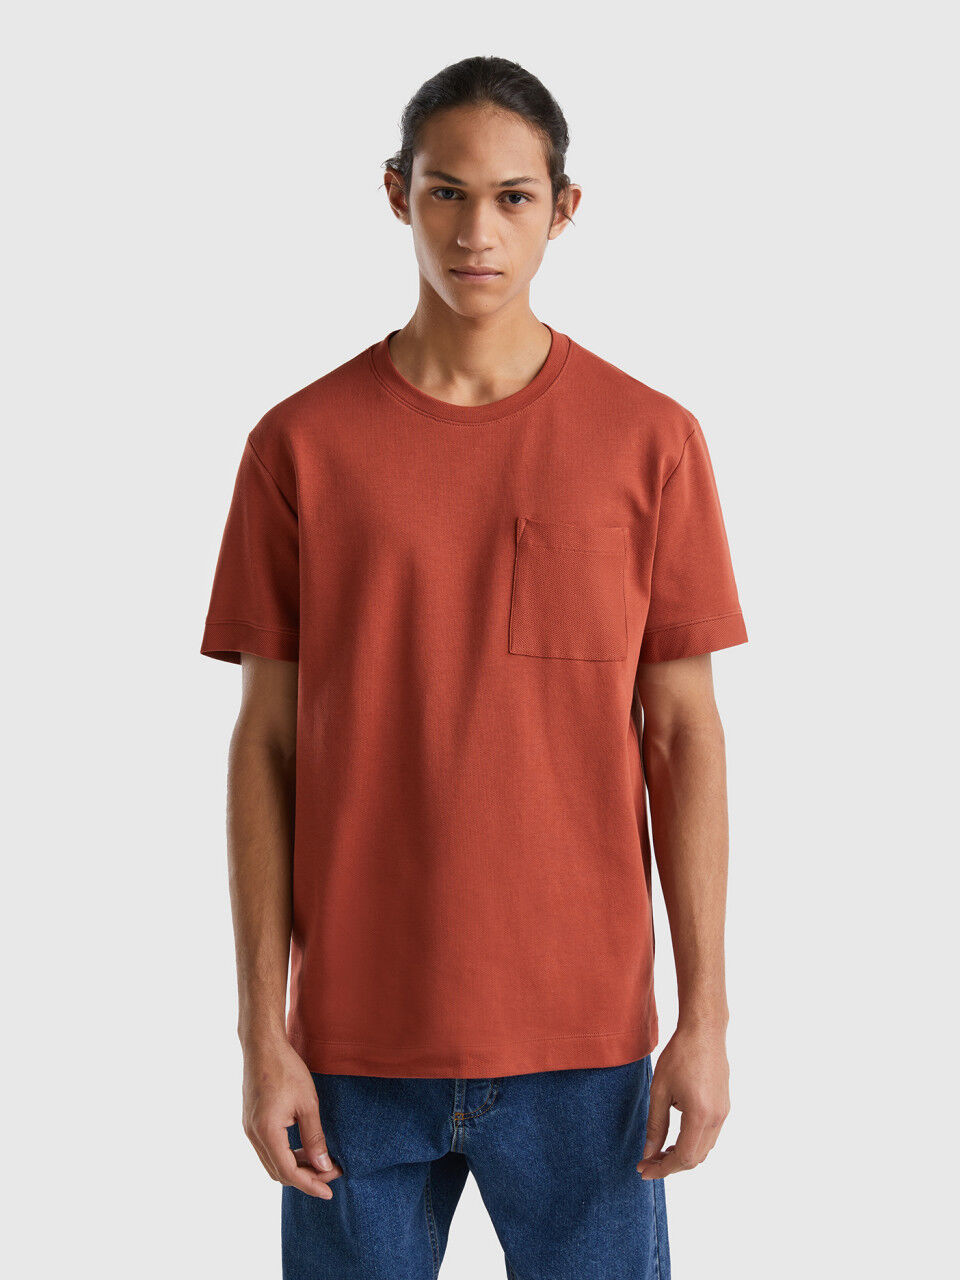 Shirt aus 100% Baumwolle mit kleiner Tasche